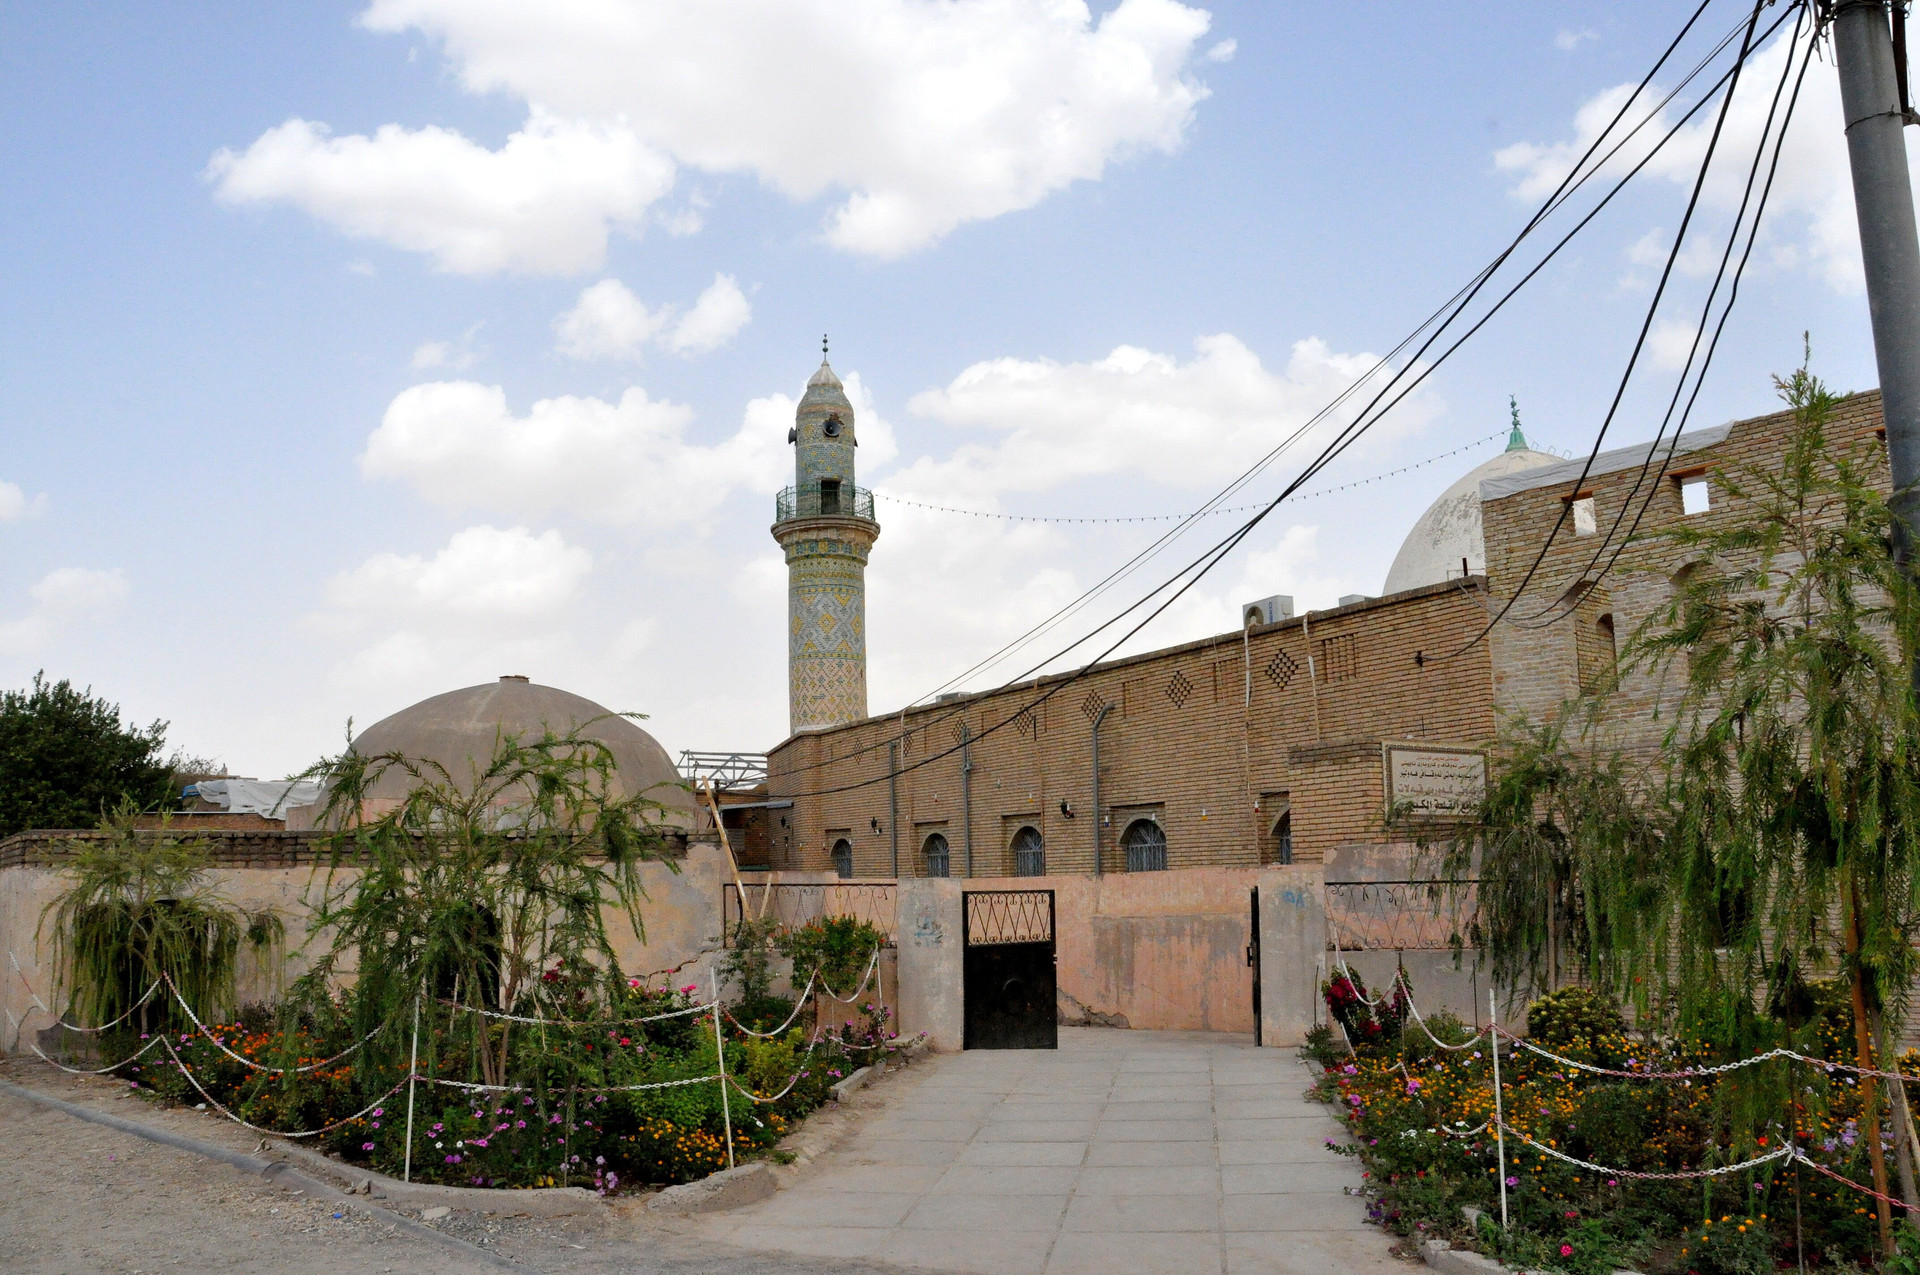 Nhà thờ Hồi giáo lớn ở trung tâm Thành cổ Erbil năm 2014 - Ảnh: Wikimedia